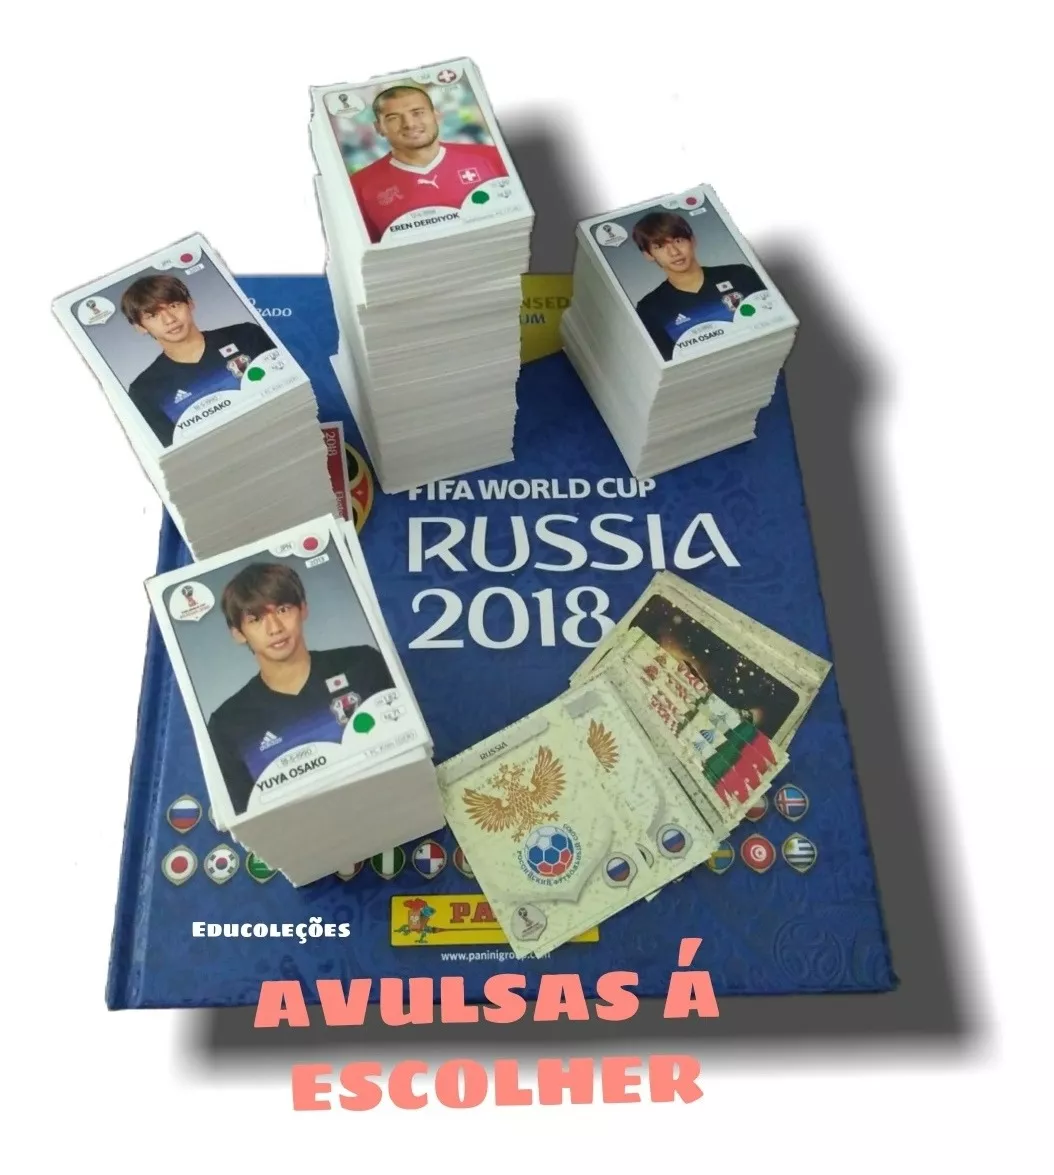 Figurinhas Avulsas Copa 2018 Rússia Á Partir De 0,40 (leiam)